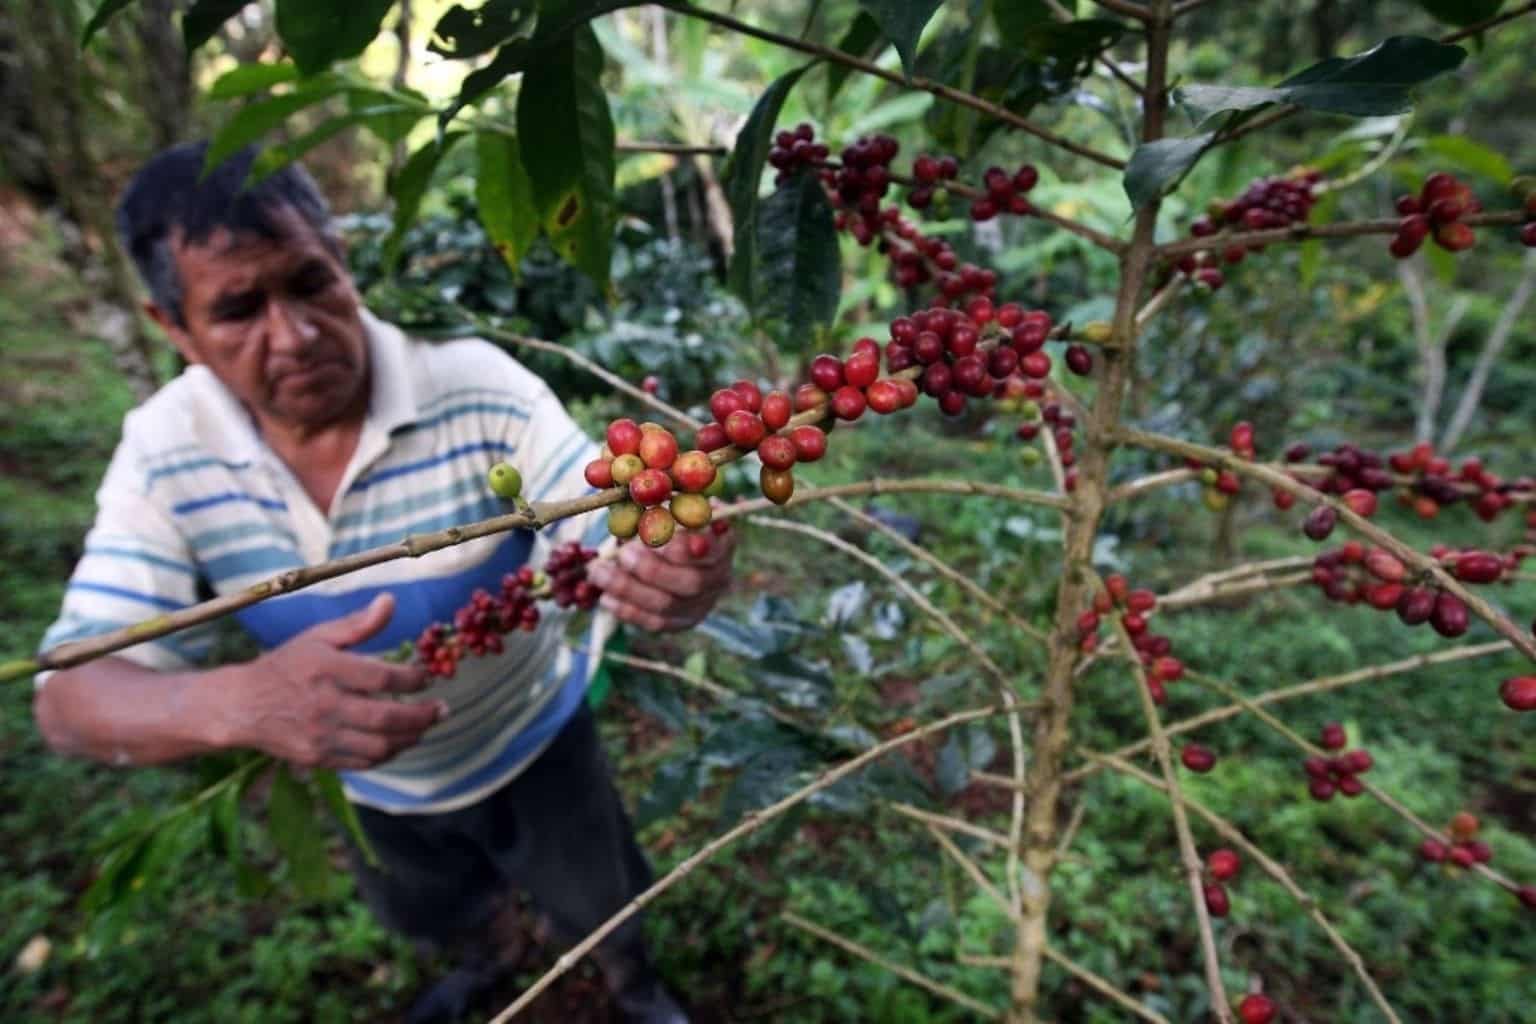 Café y cacao en incertidumbre: ¿Qué salidas tienen los productores ante las medidas contra la deforestación?